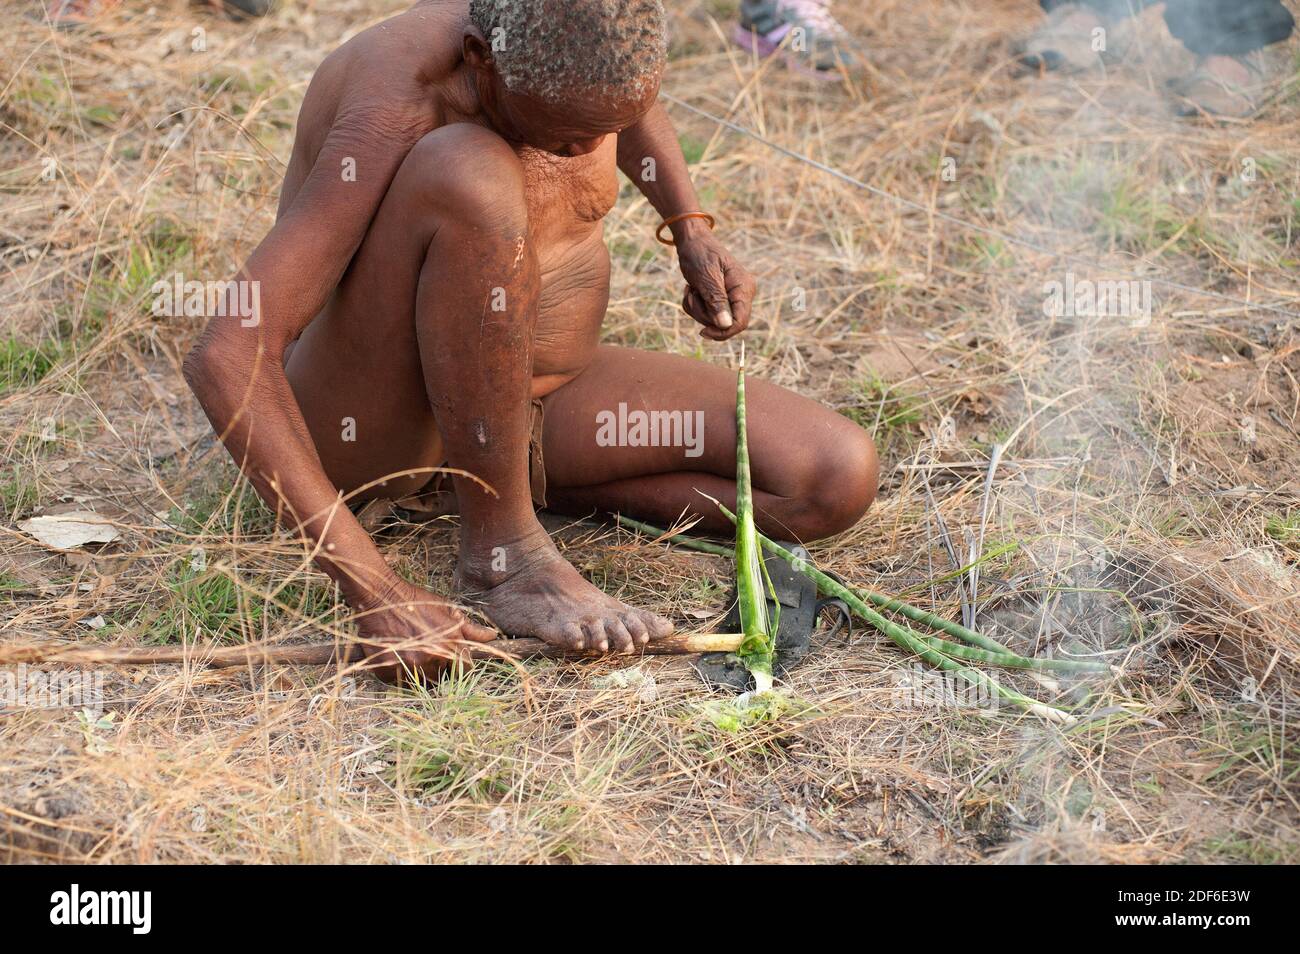 San- oder Bushman-Mann, der Sisalfasern extrahiert. Tsumkwe, Otjozondjupa, Kalahari, Namibia. Stockfoto